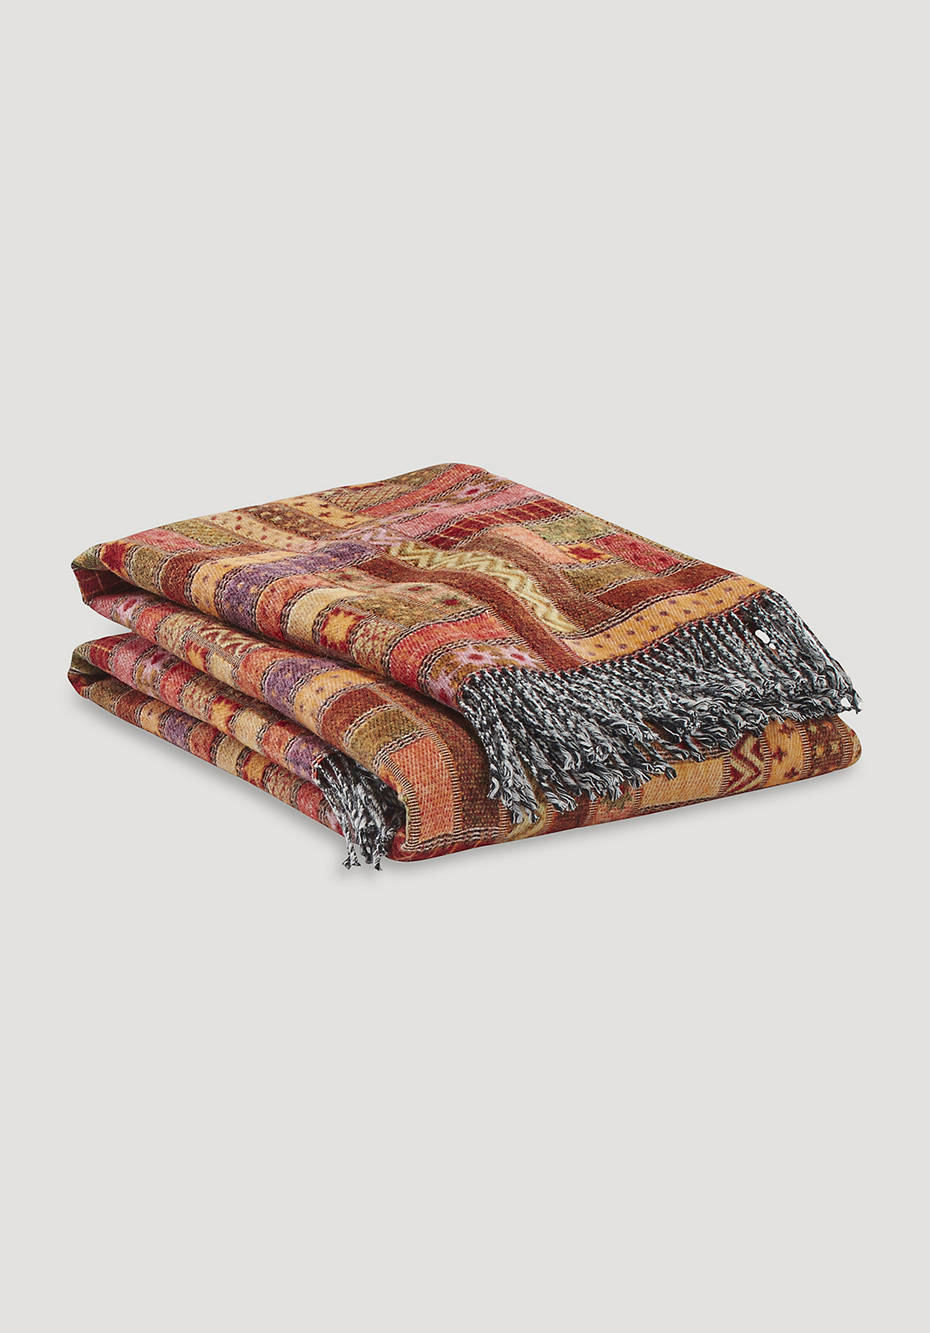 Baltimora blanket made from pure merino wool